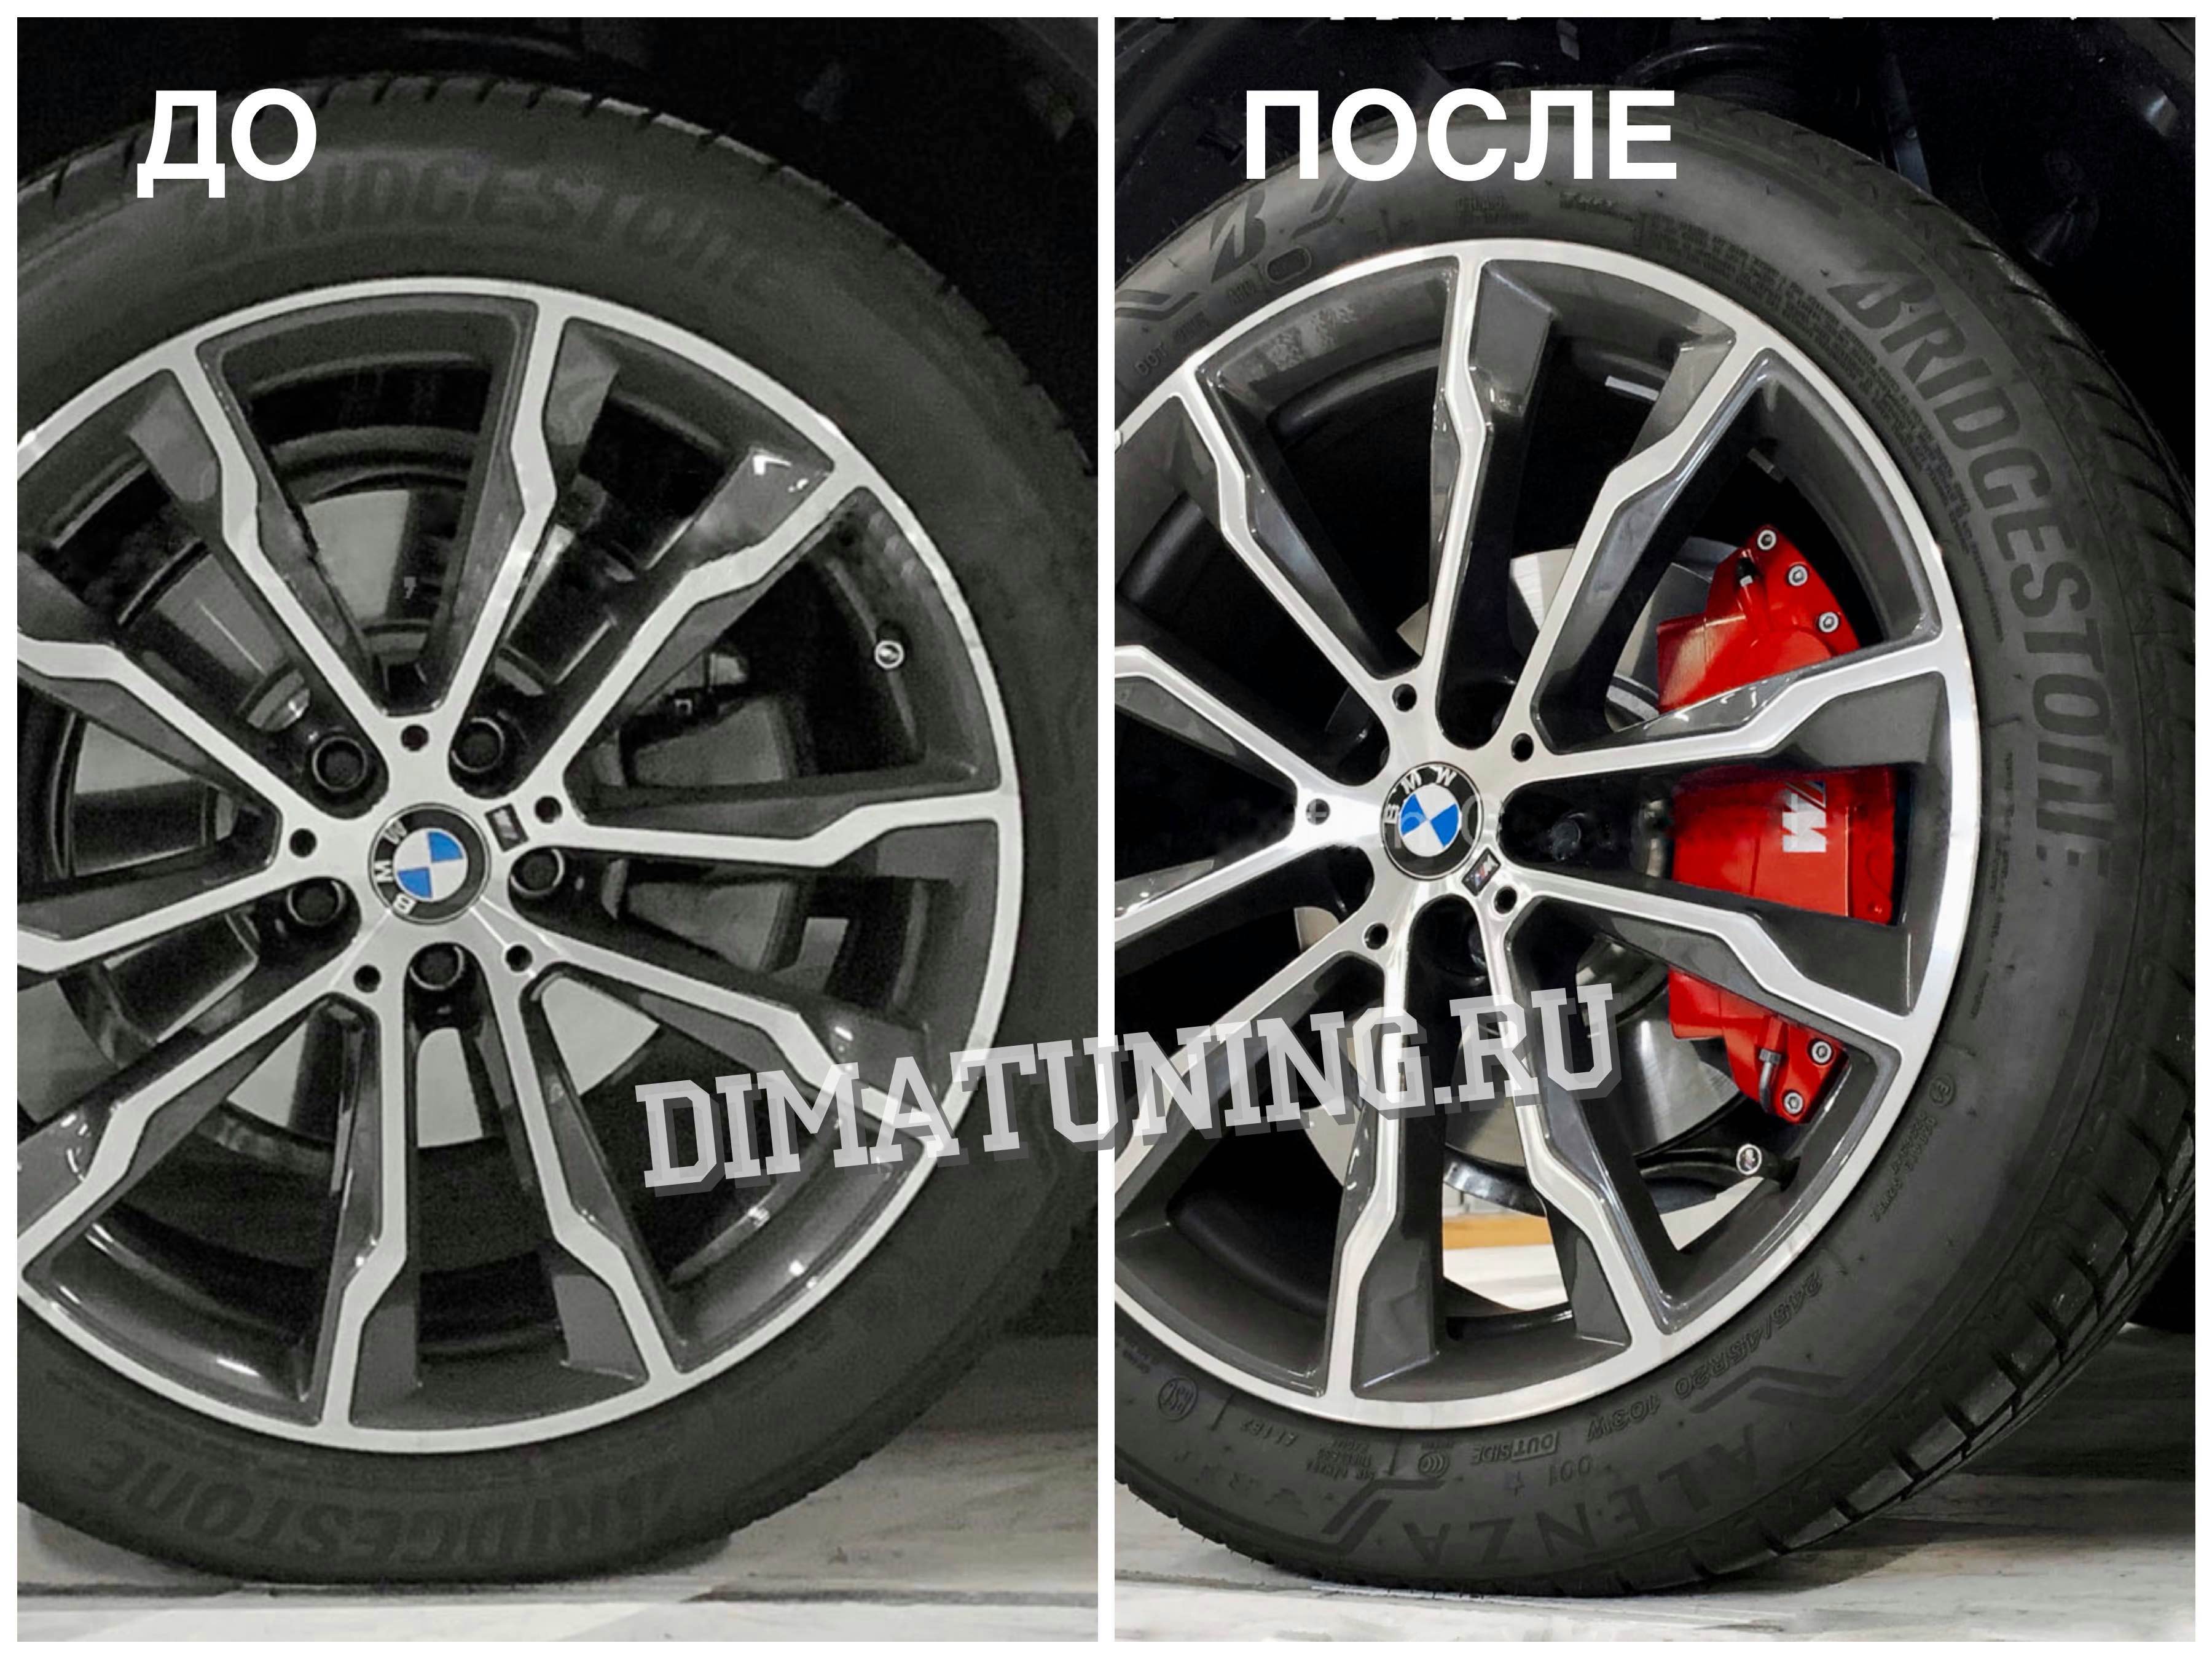 Накладки на суппорта БМВ x5 x6 g05/g06. BMW ///M Performance, Brembo. Купить СПб.